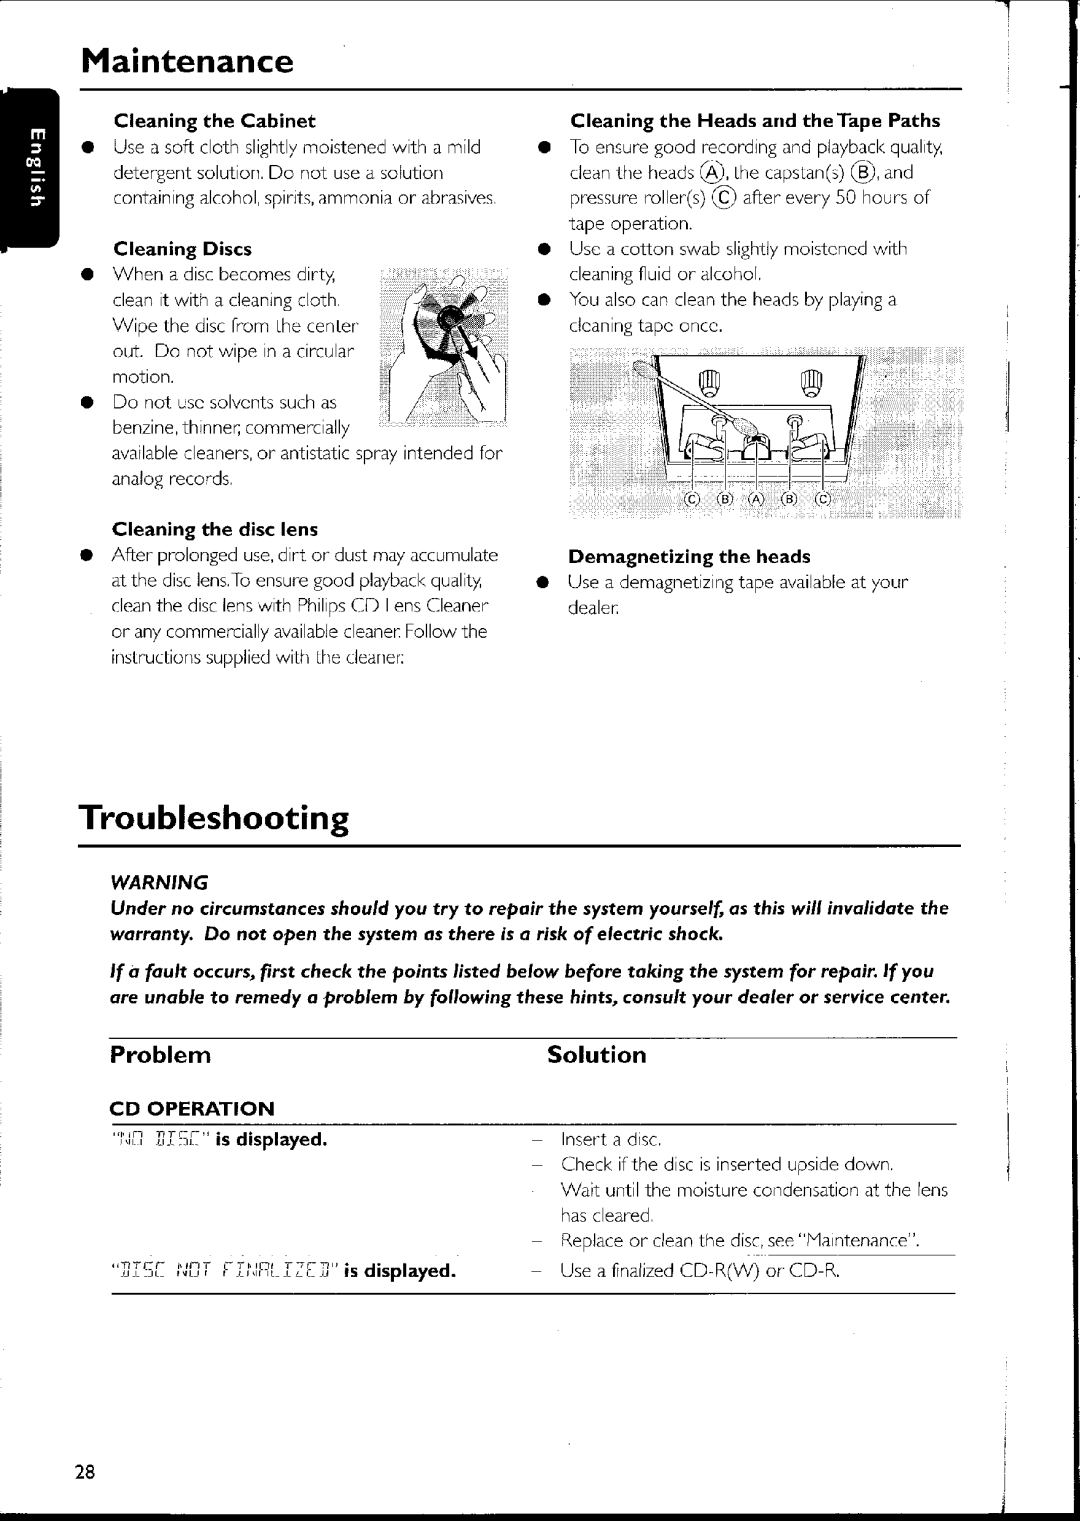 Philips FW-C500 manual 